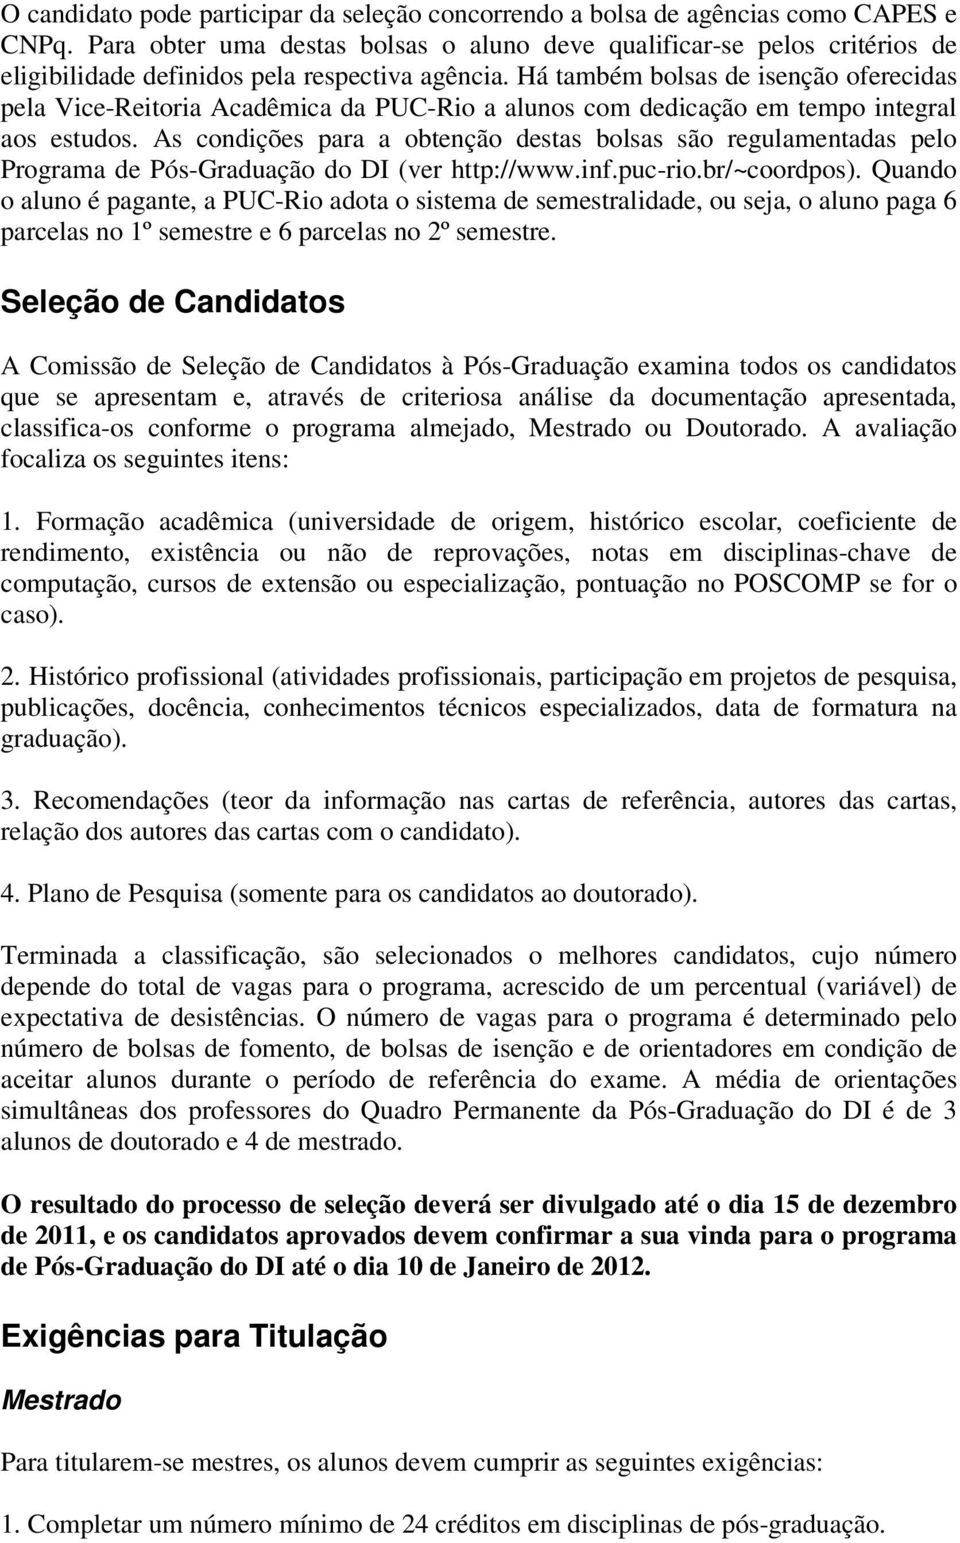 Há também bolsas de isenção oferecidas pela Vice-Reitoria Acadêmica da PUC-Rio a alunos com dedicação em tempo integral aos estudos.